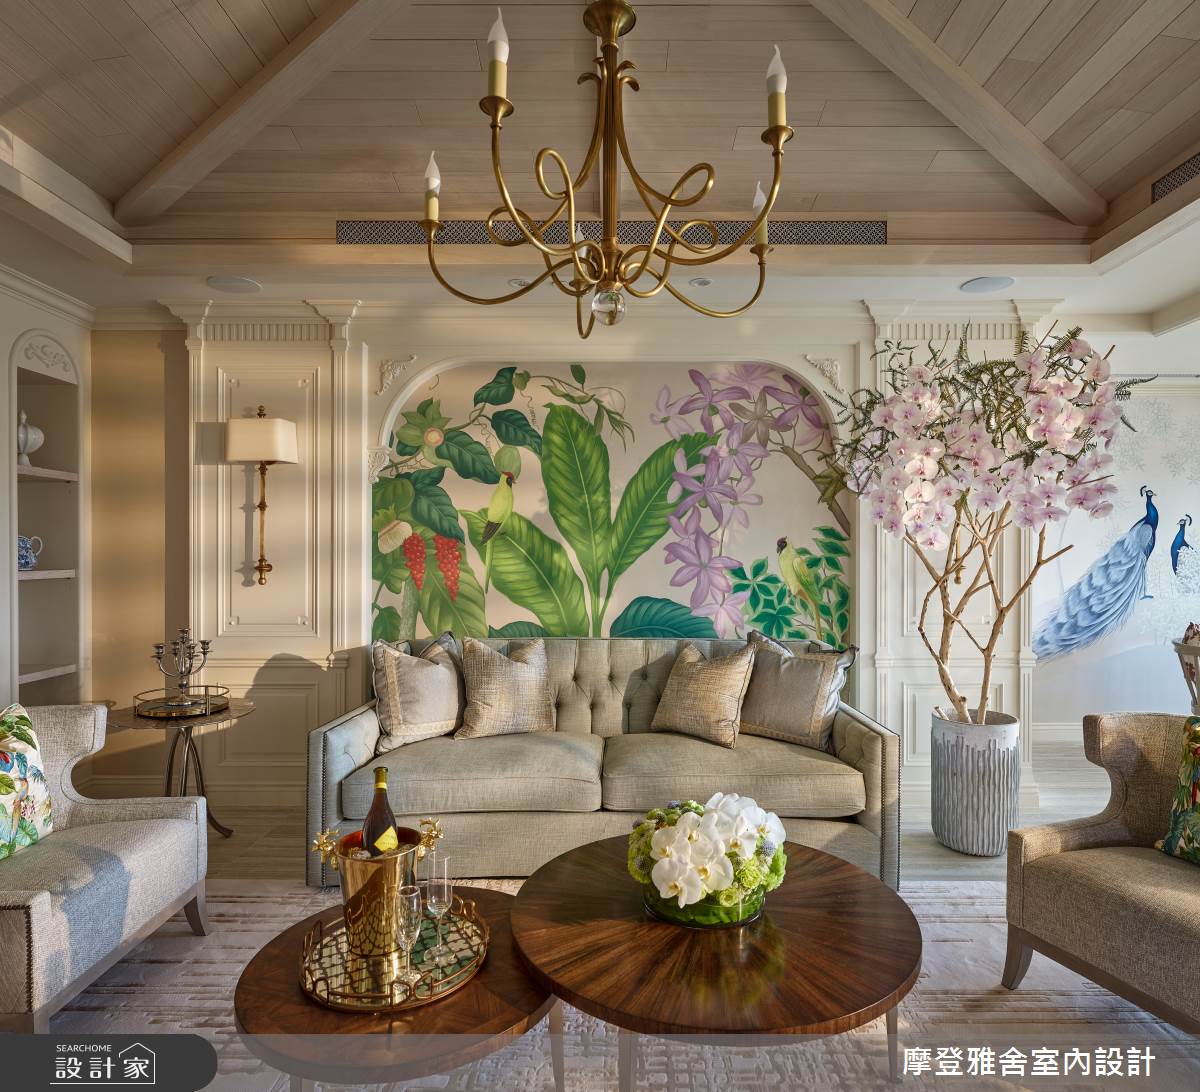 沙發背牆壁紙以大面花卉、葉瓣，精湛描繪鄉村豪宅的度假風情。